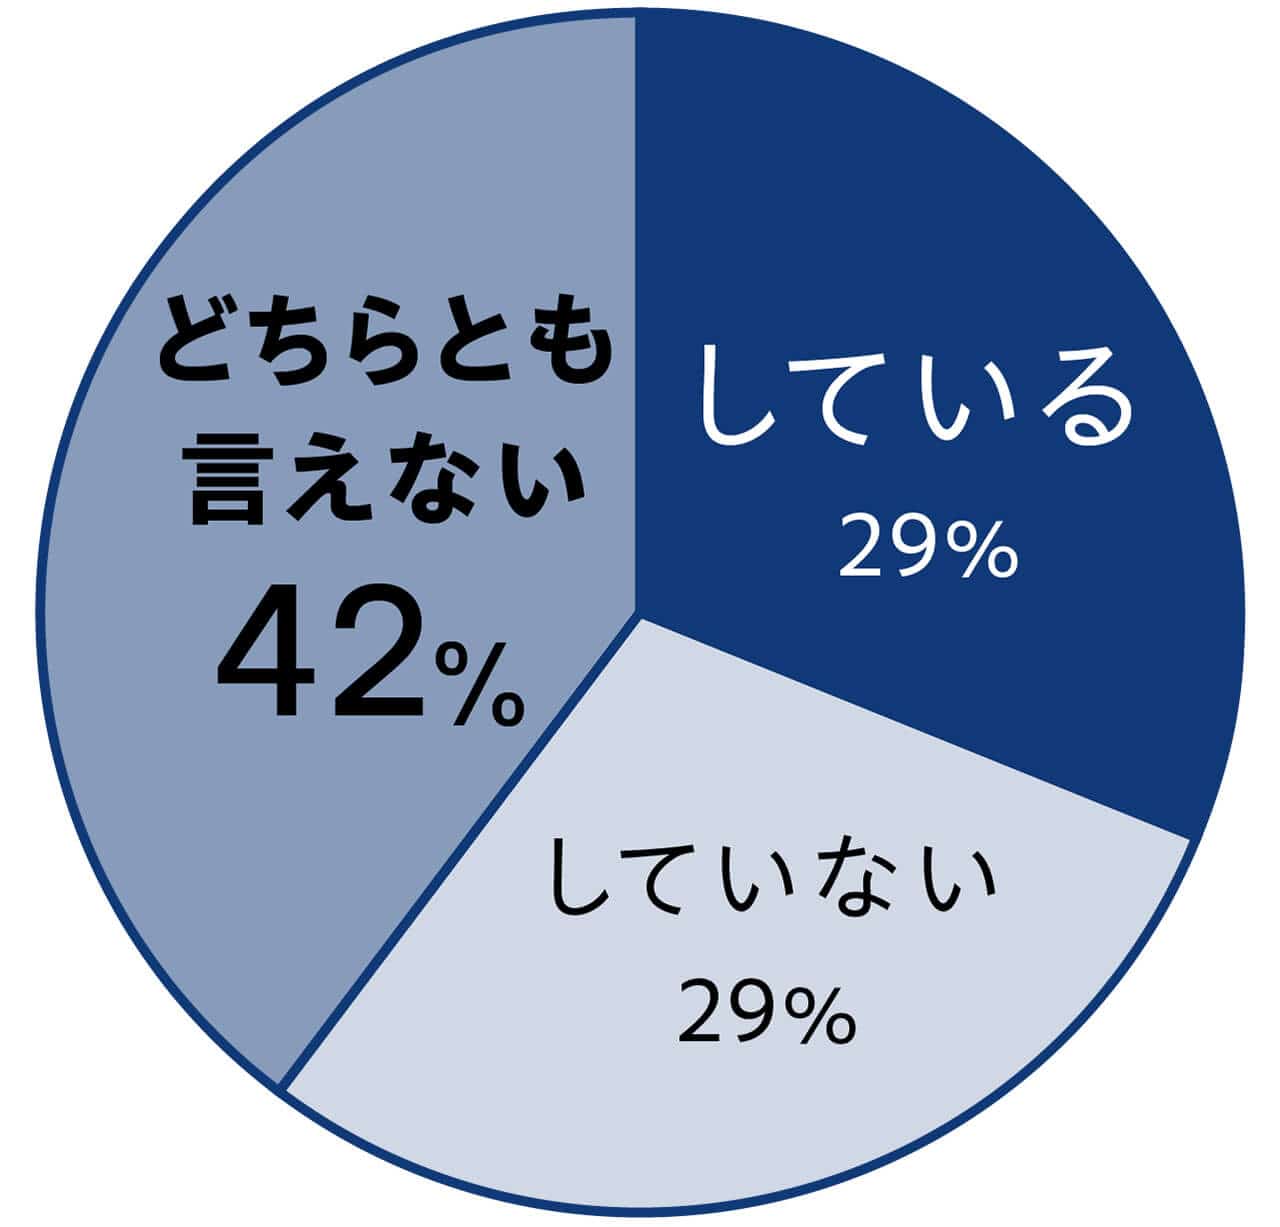 している　29％　していない　29％　どちらとも言えない　42%